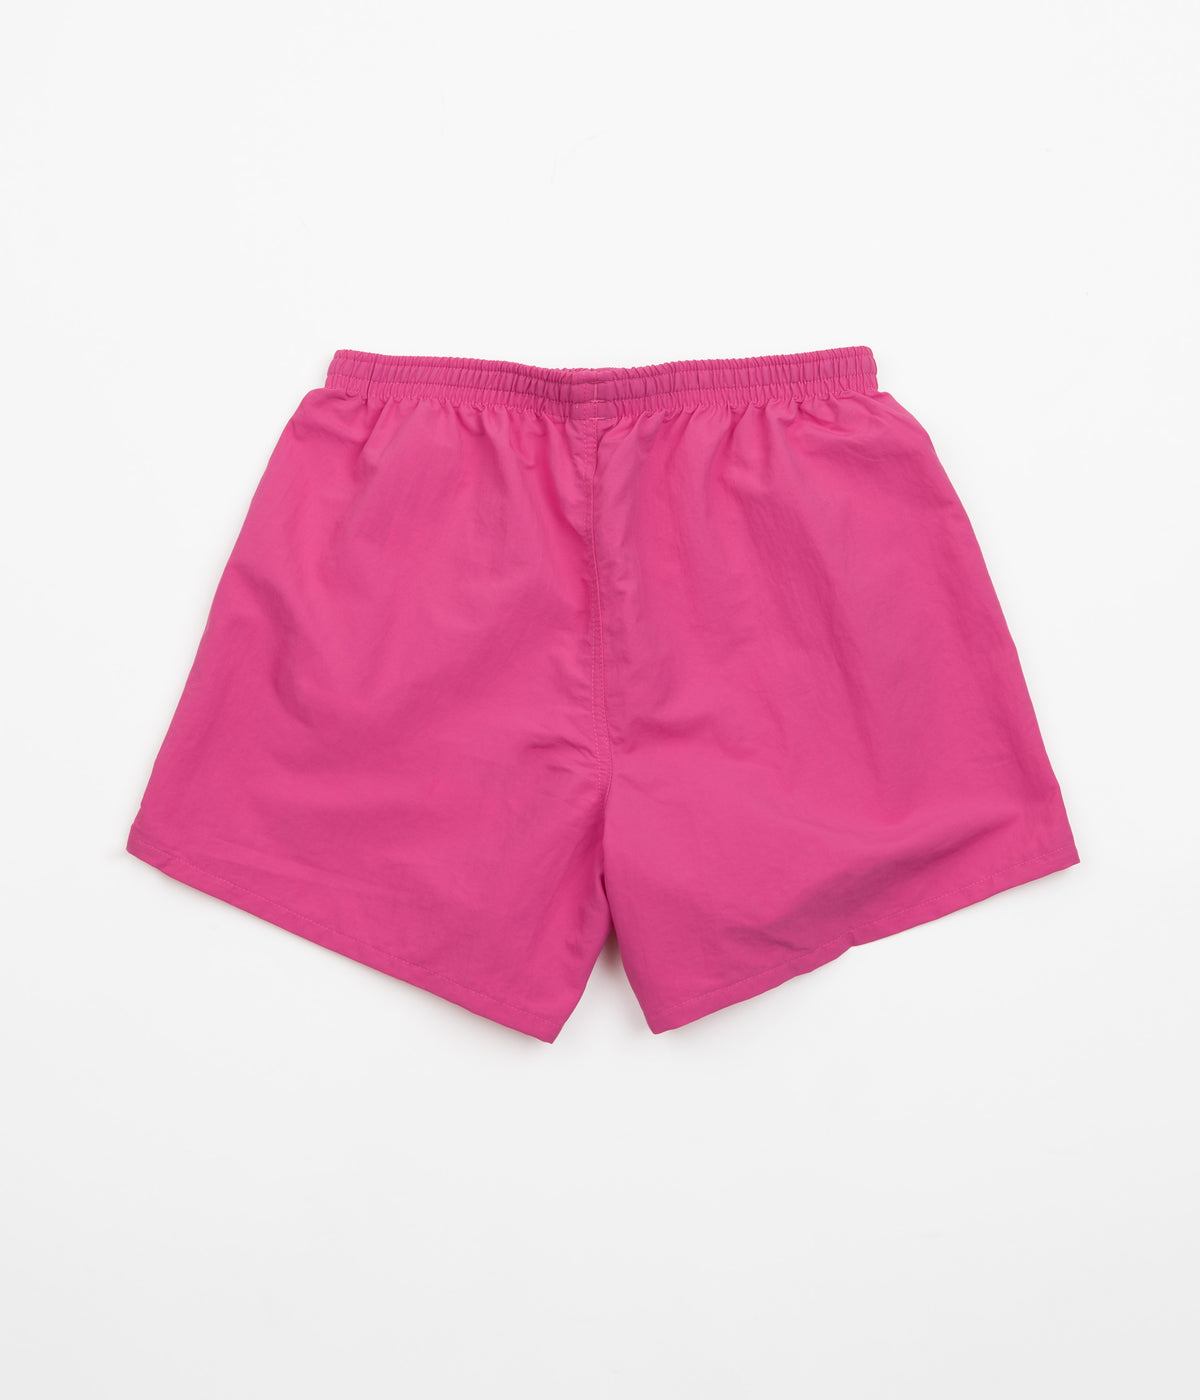 Patagonia Womens Baggies 5 Shorts - Mythic Pink